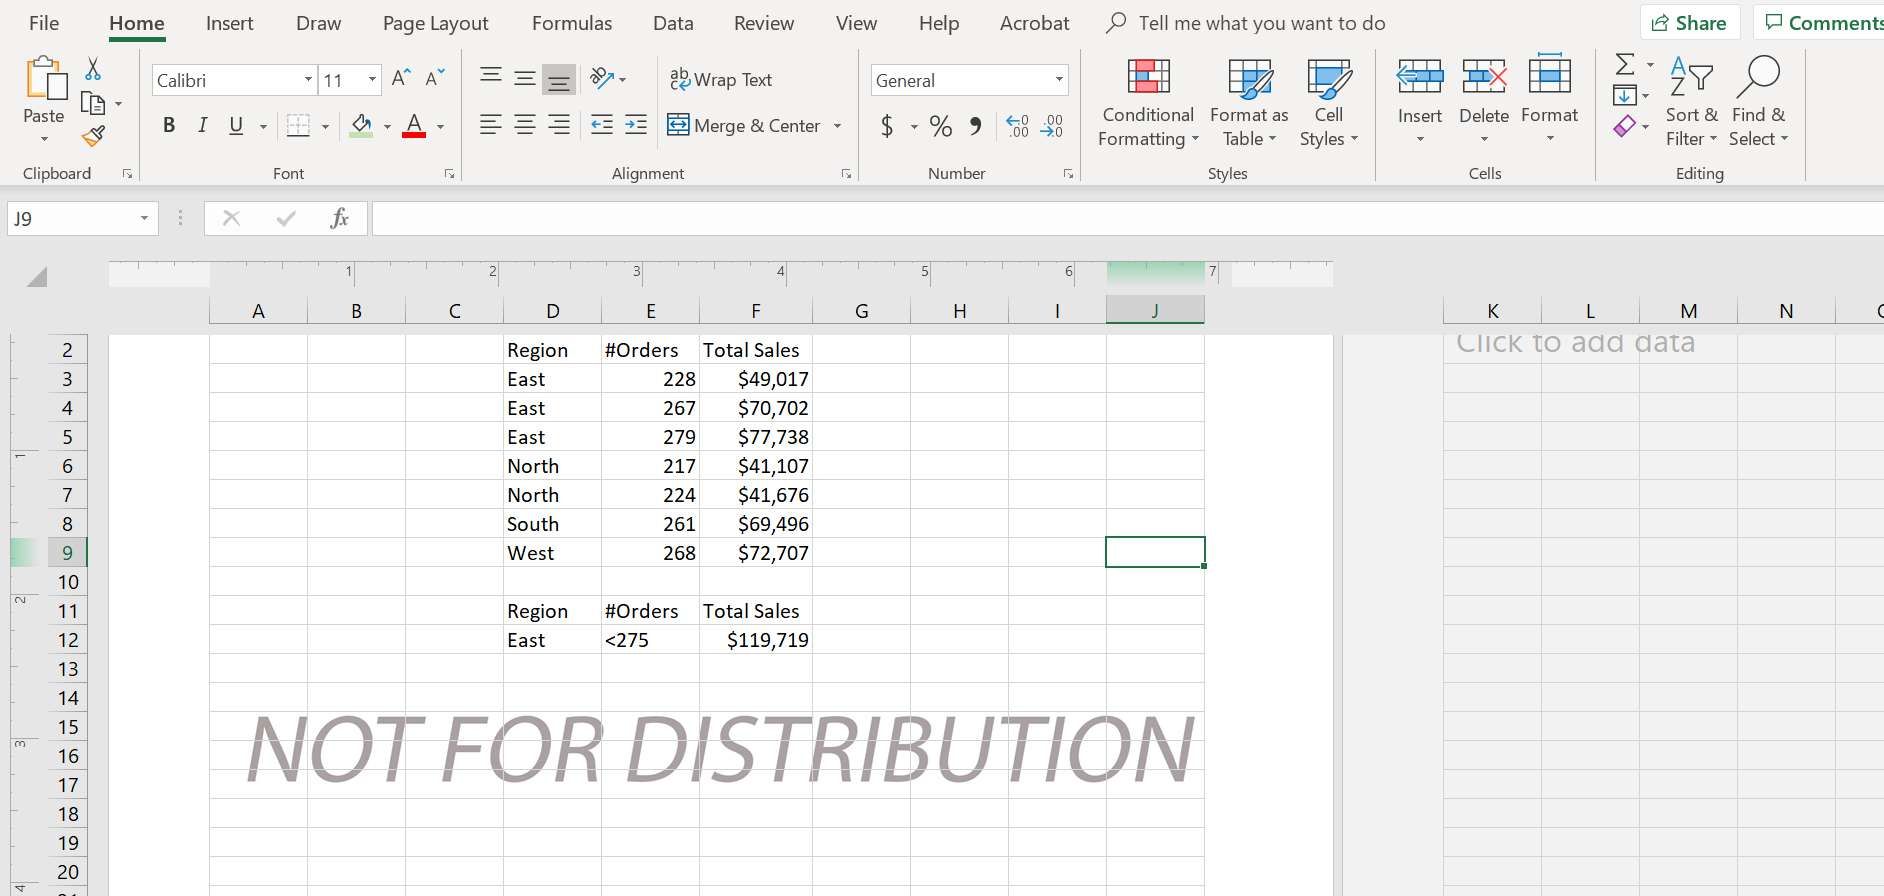 Электронная таблица Excel с водяным знаком внизу: не для распространения.